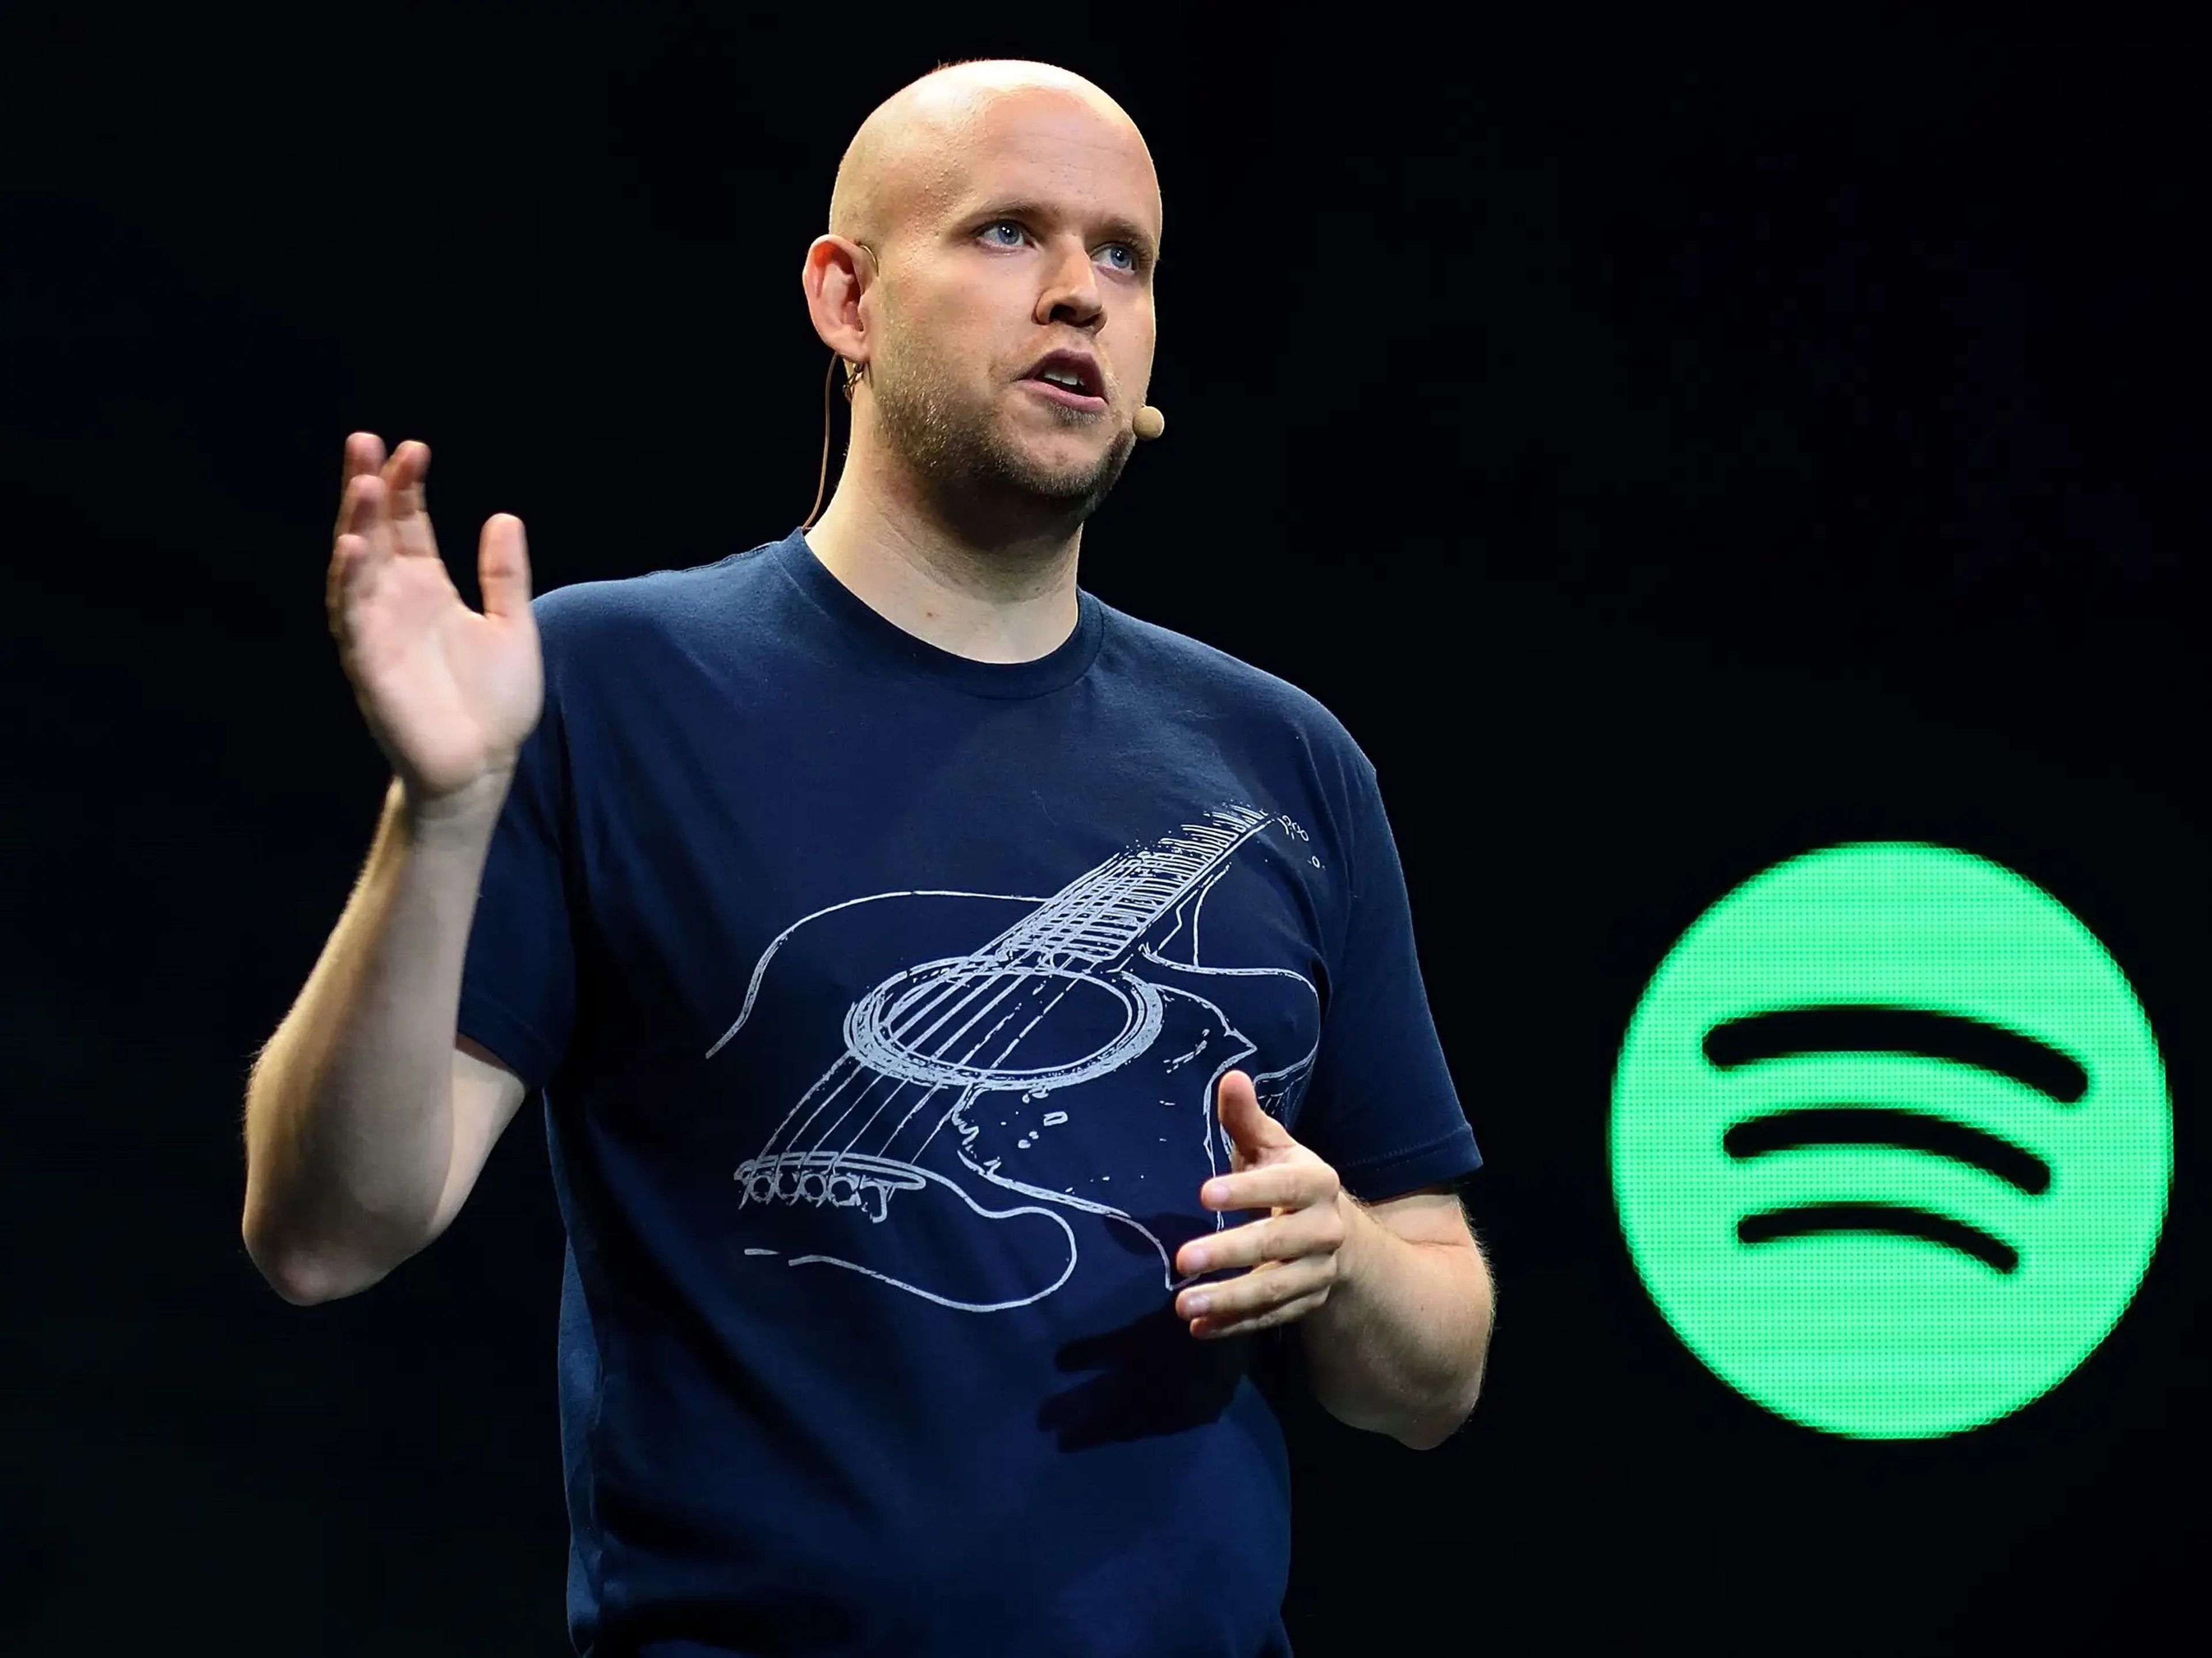 El CEO de Spotify, Daniel Ek, describió los cambios de Apple como una "clase magistral de distorsión".